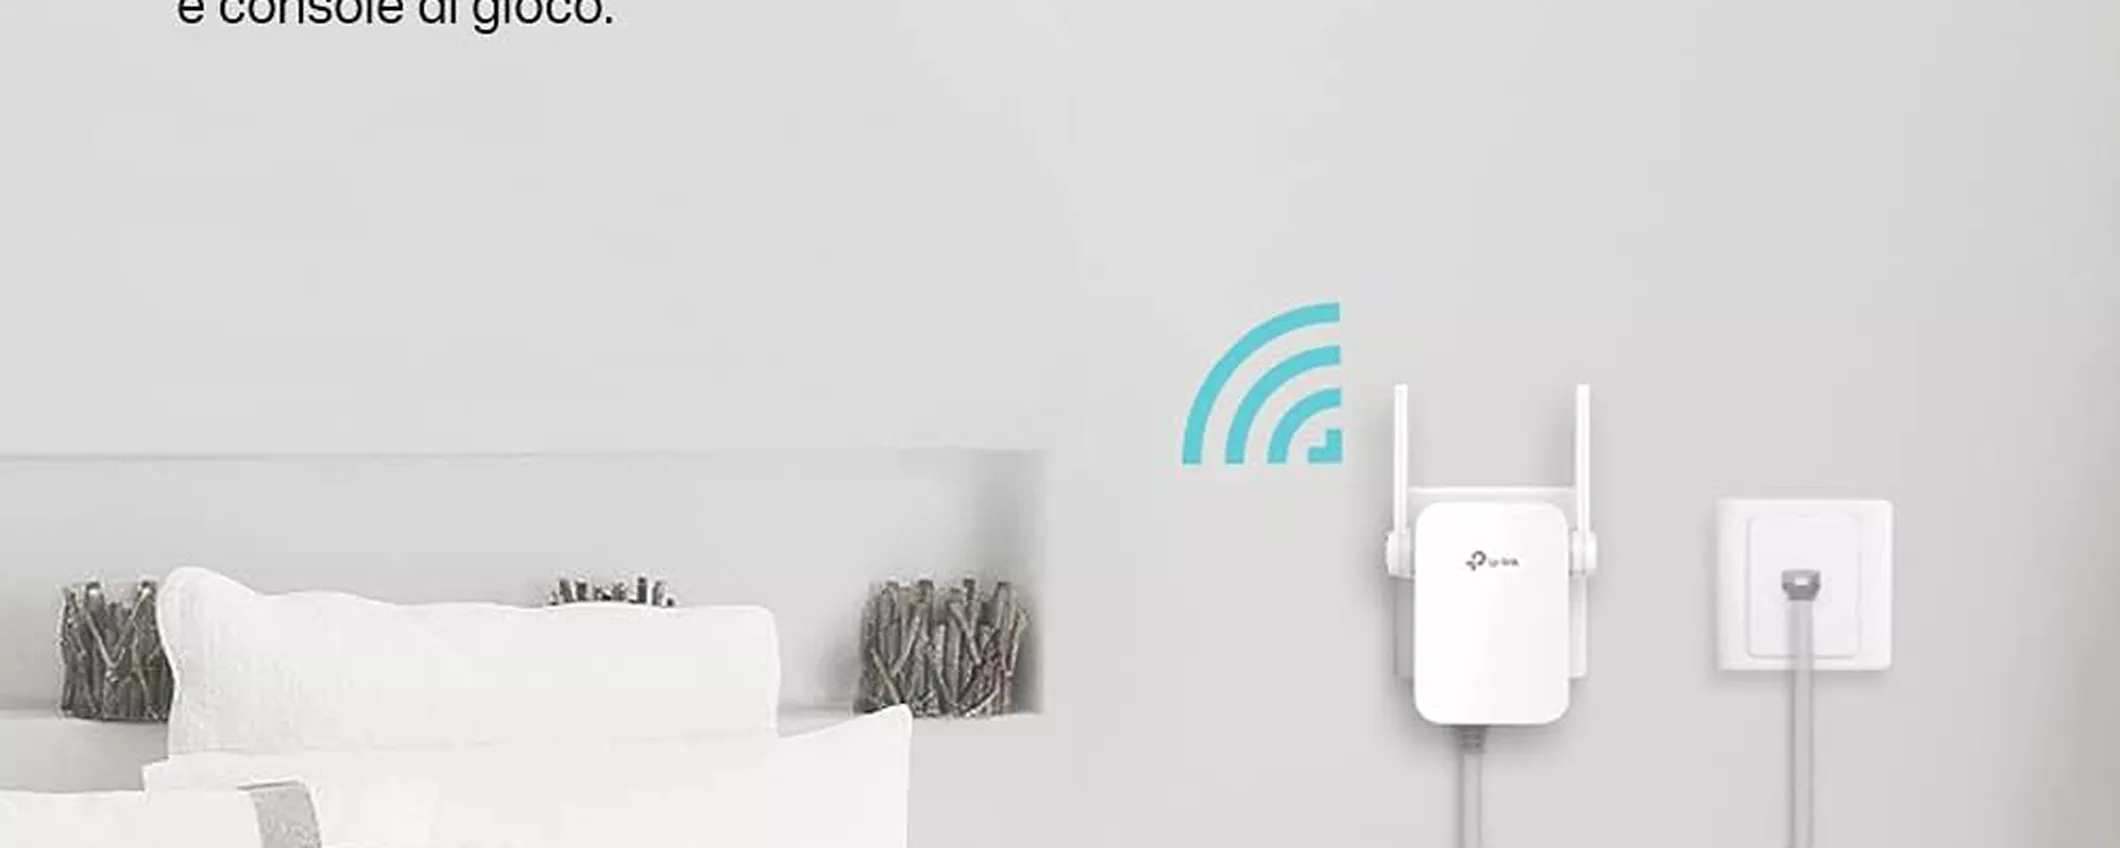 Con appena 29€ il tuo WiFi diventa così potente da sfondare i muri col ripetitore TP-Link